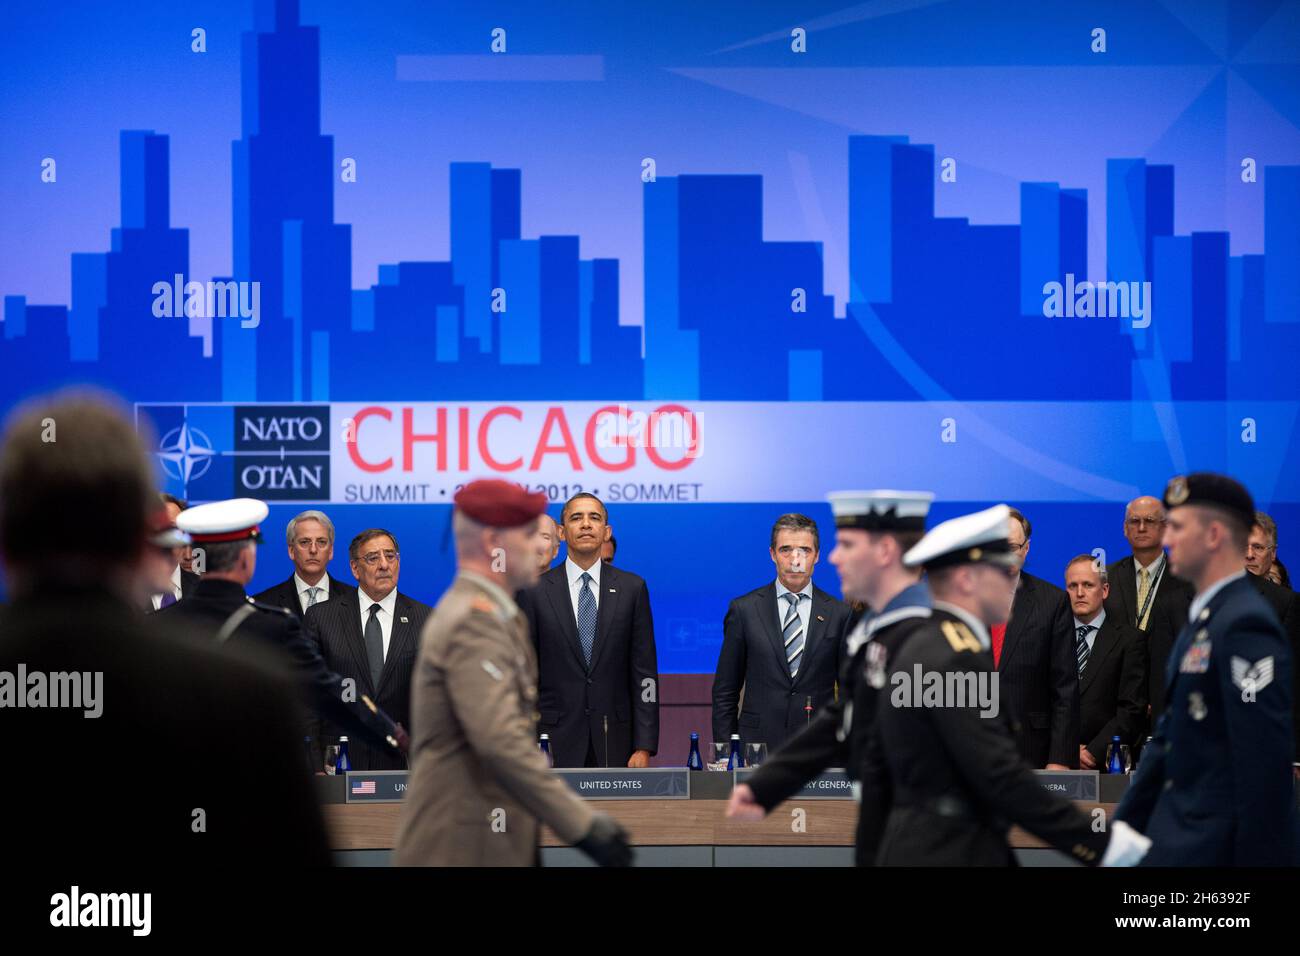 Präsident Barack Obama und NATO-Generalsekretär anders Fogh Rasmussen nehmen an einem Treffen des Nordatlantischen Rates mit Staats- und Regierungschefs während des NATO-Gipfels in Chicago, Ill, 20. Mai 2012 Teil. Stockfoto